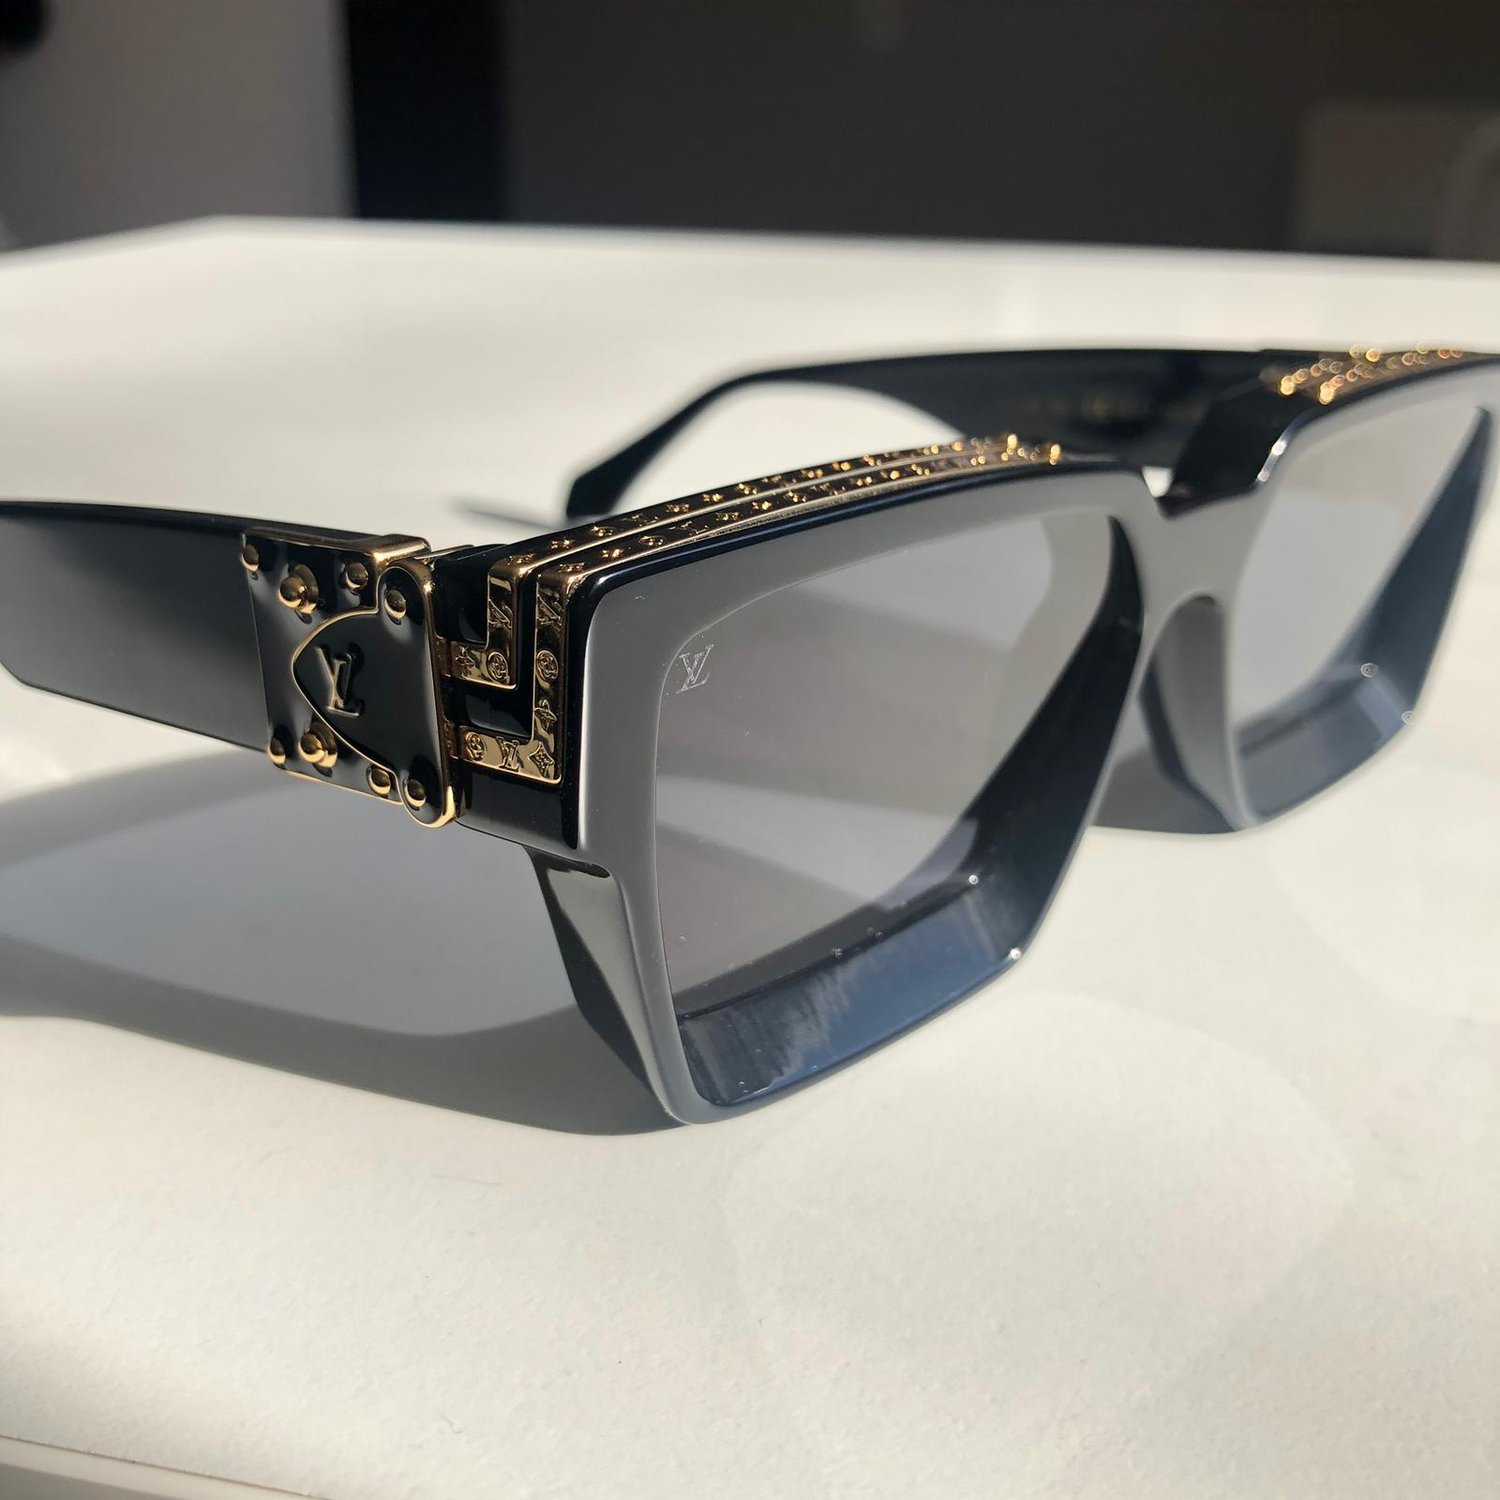 Louis Vuitton Unboxing 1.1 Millionaires Sunglasses 